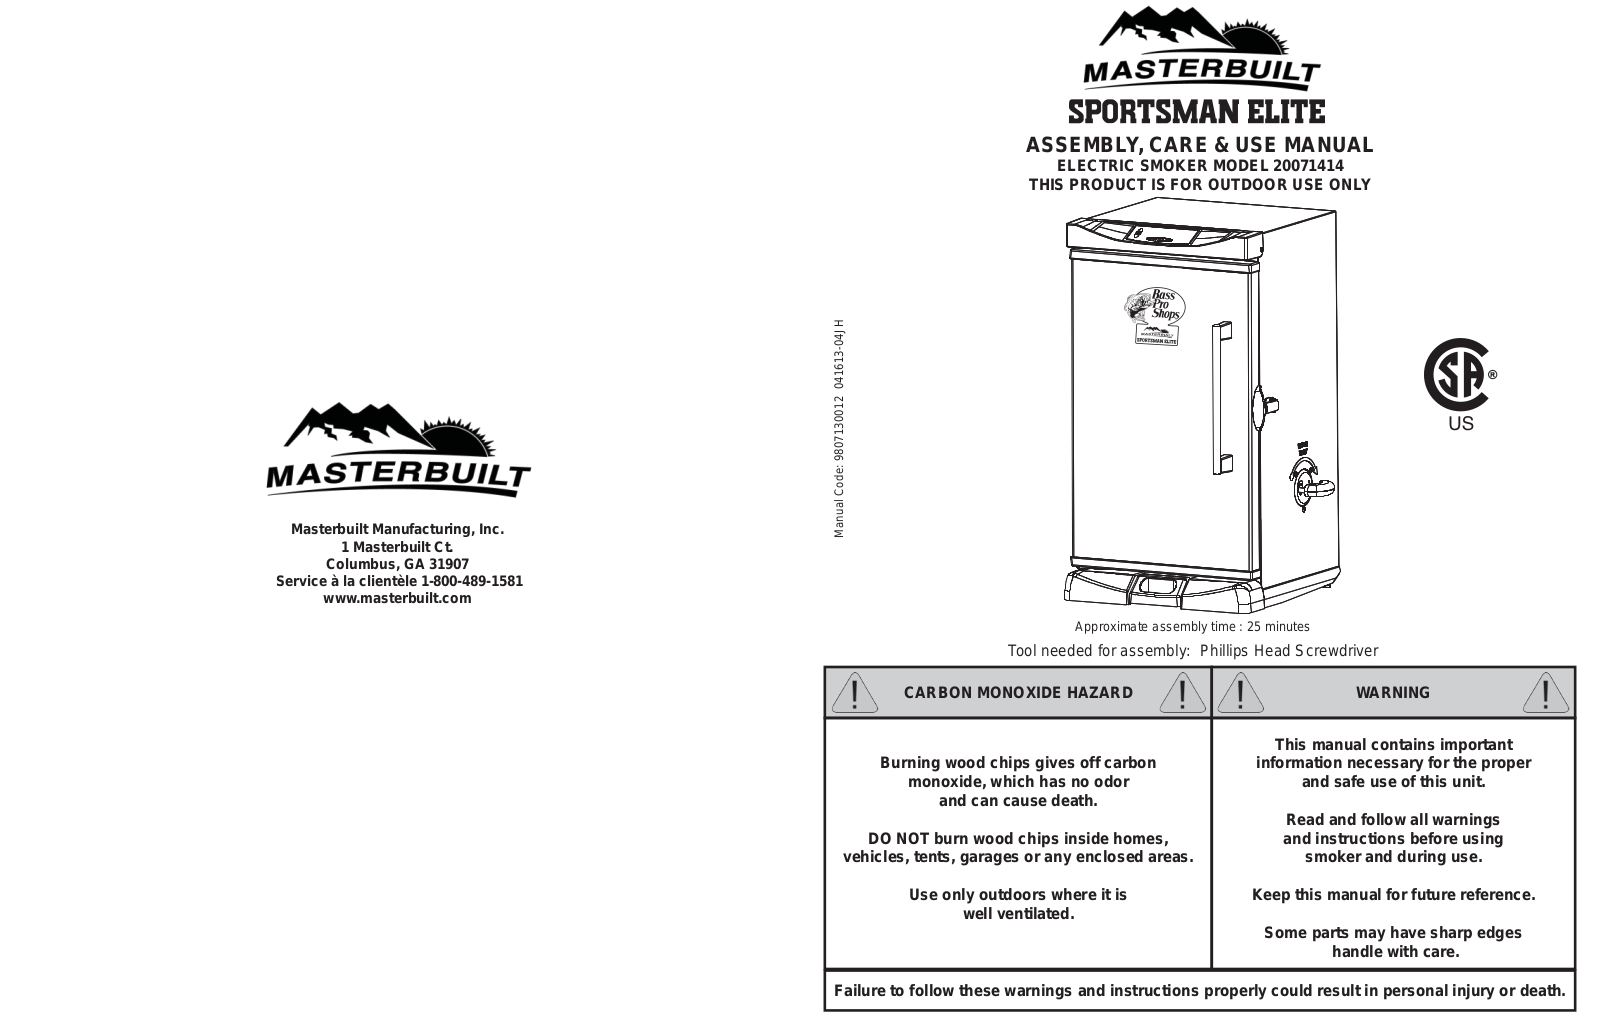 Masterbuilt 20071414 Owner's Manual